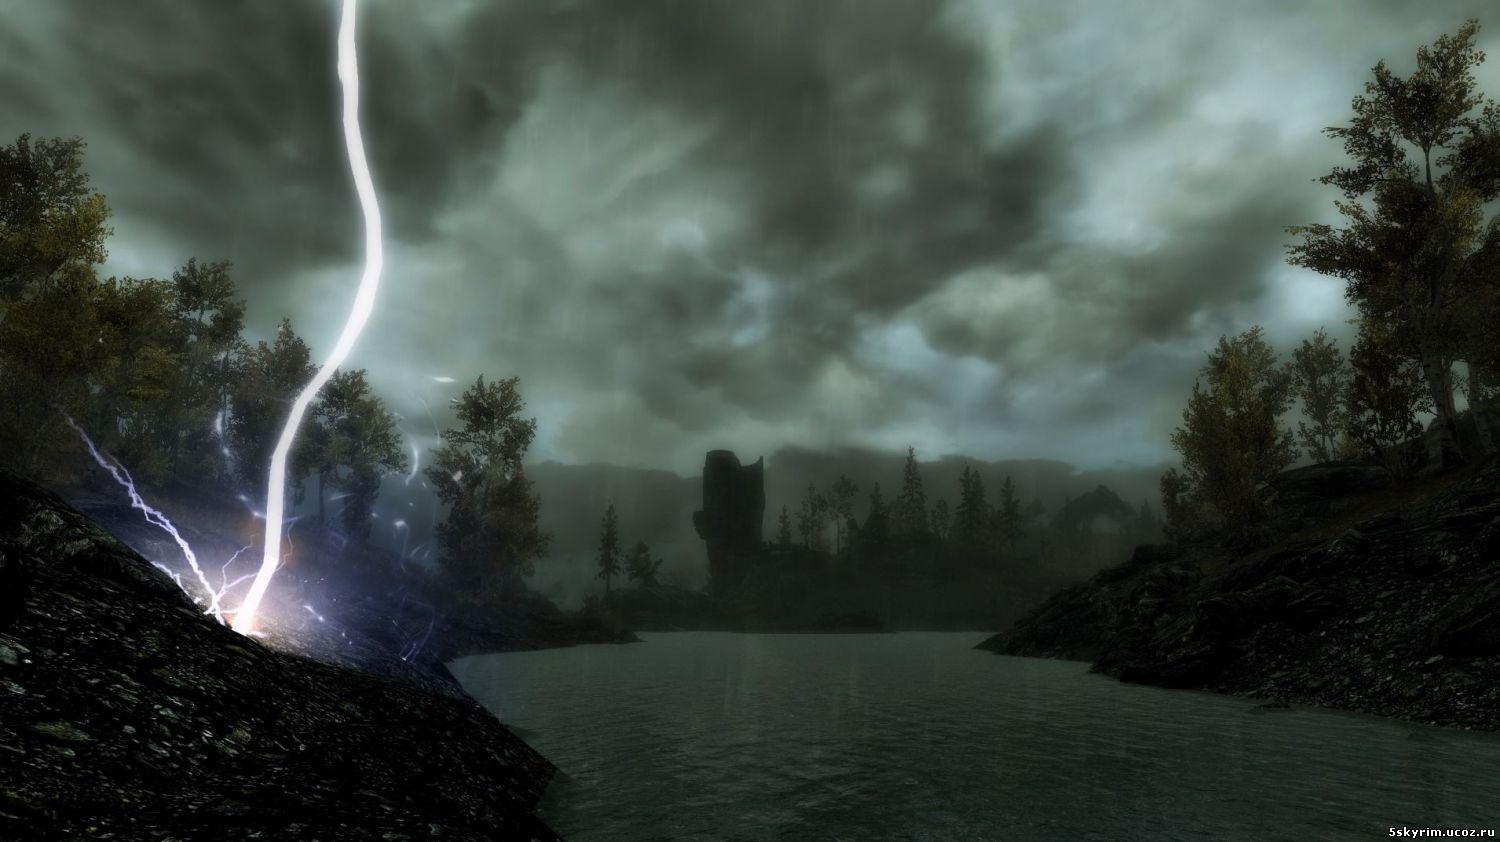 Молнии во время грозы: Lightning during Thunder Storms